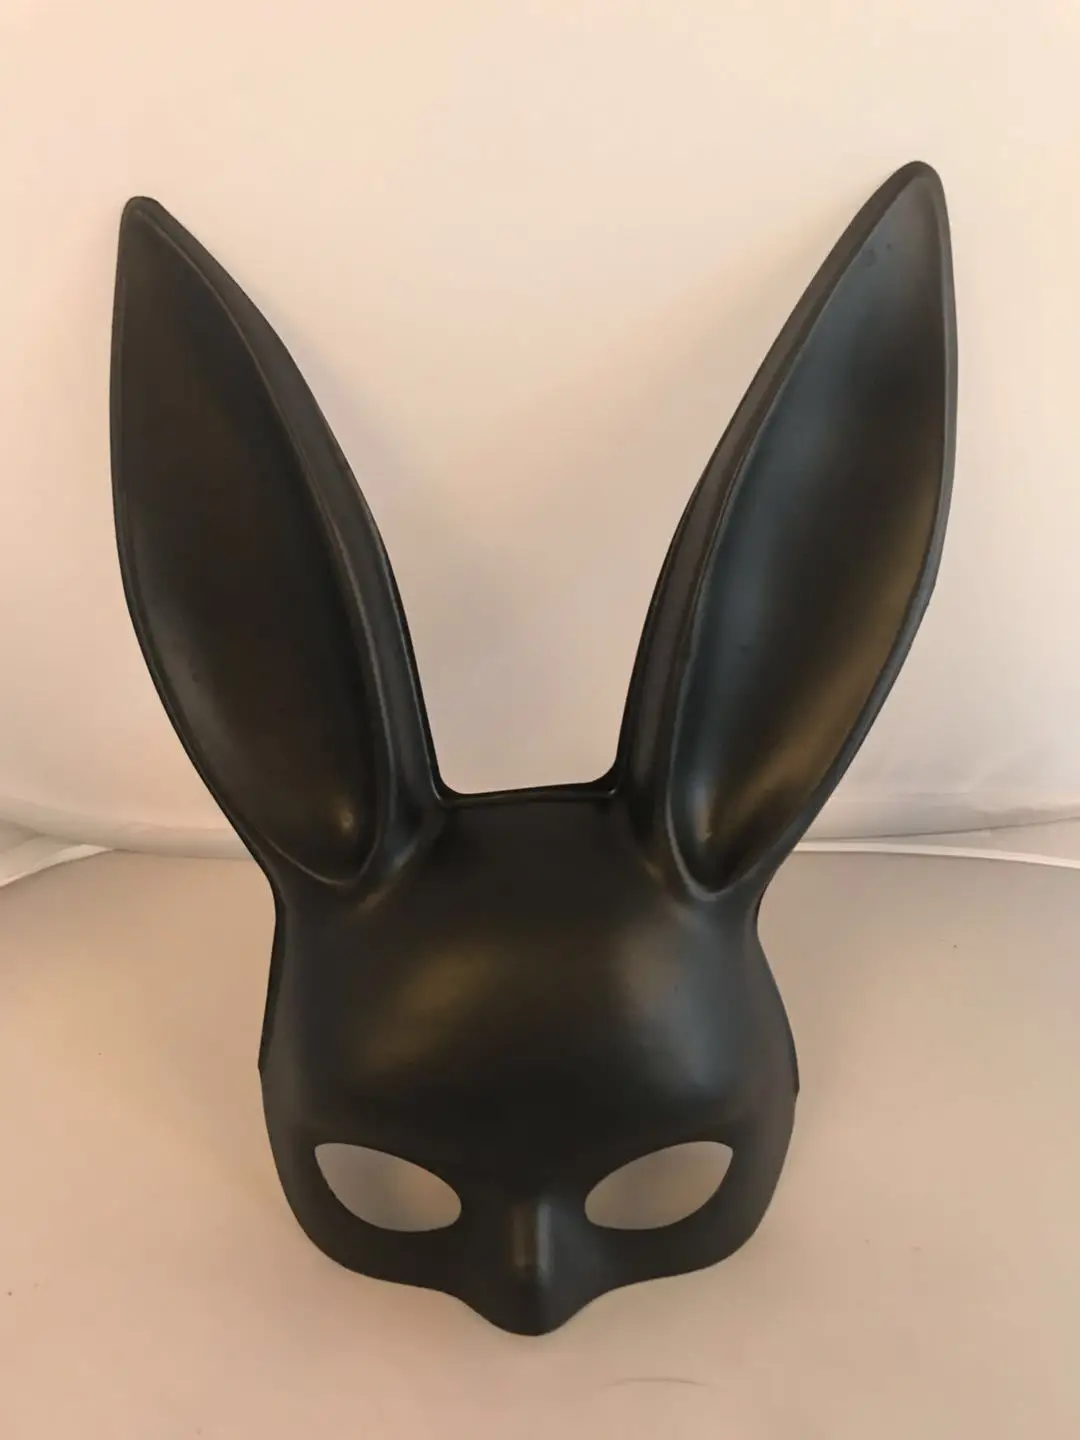 Новые Маски для Хэллоуина с длинными ушками кролика, женский сексуальный танцевальный карнавальный костюм, Маскарадная маска для девочек